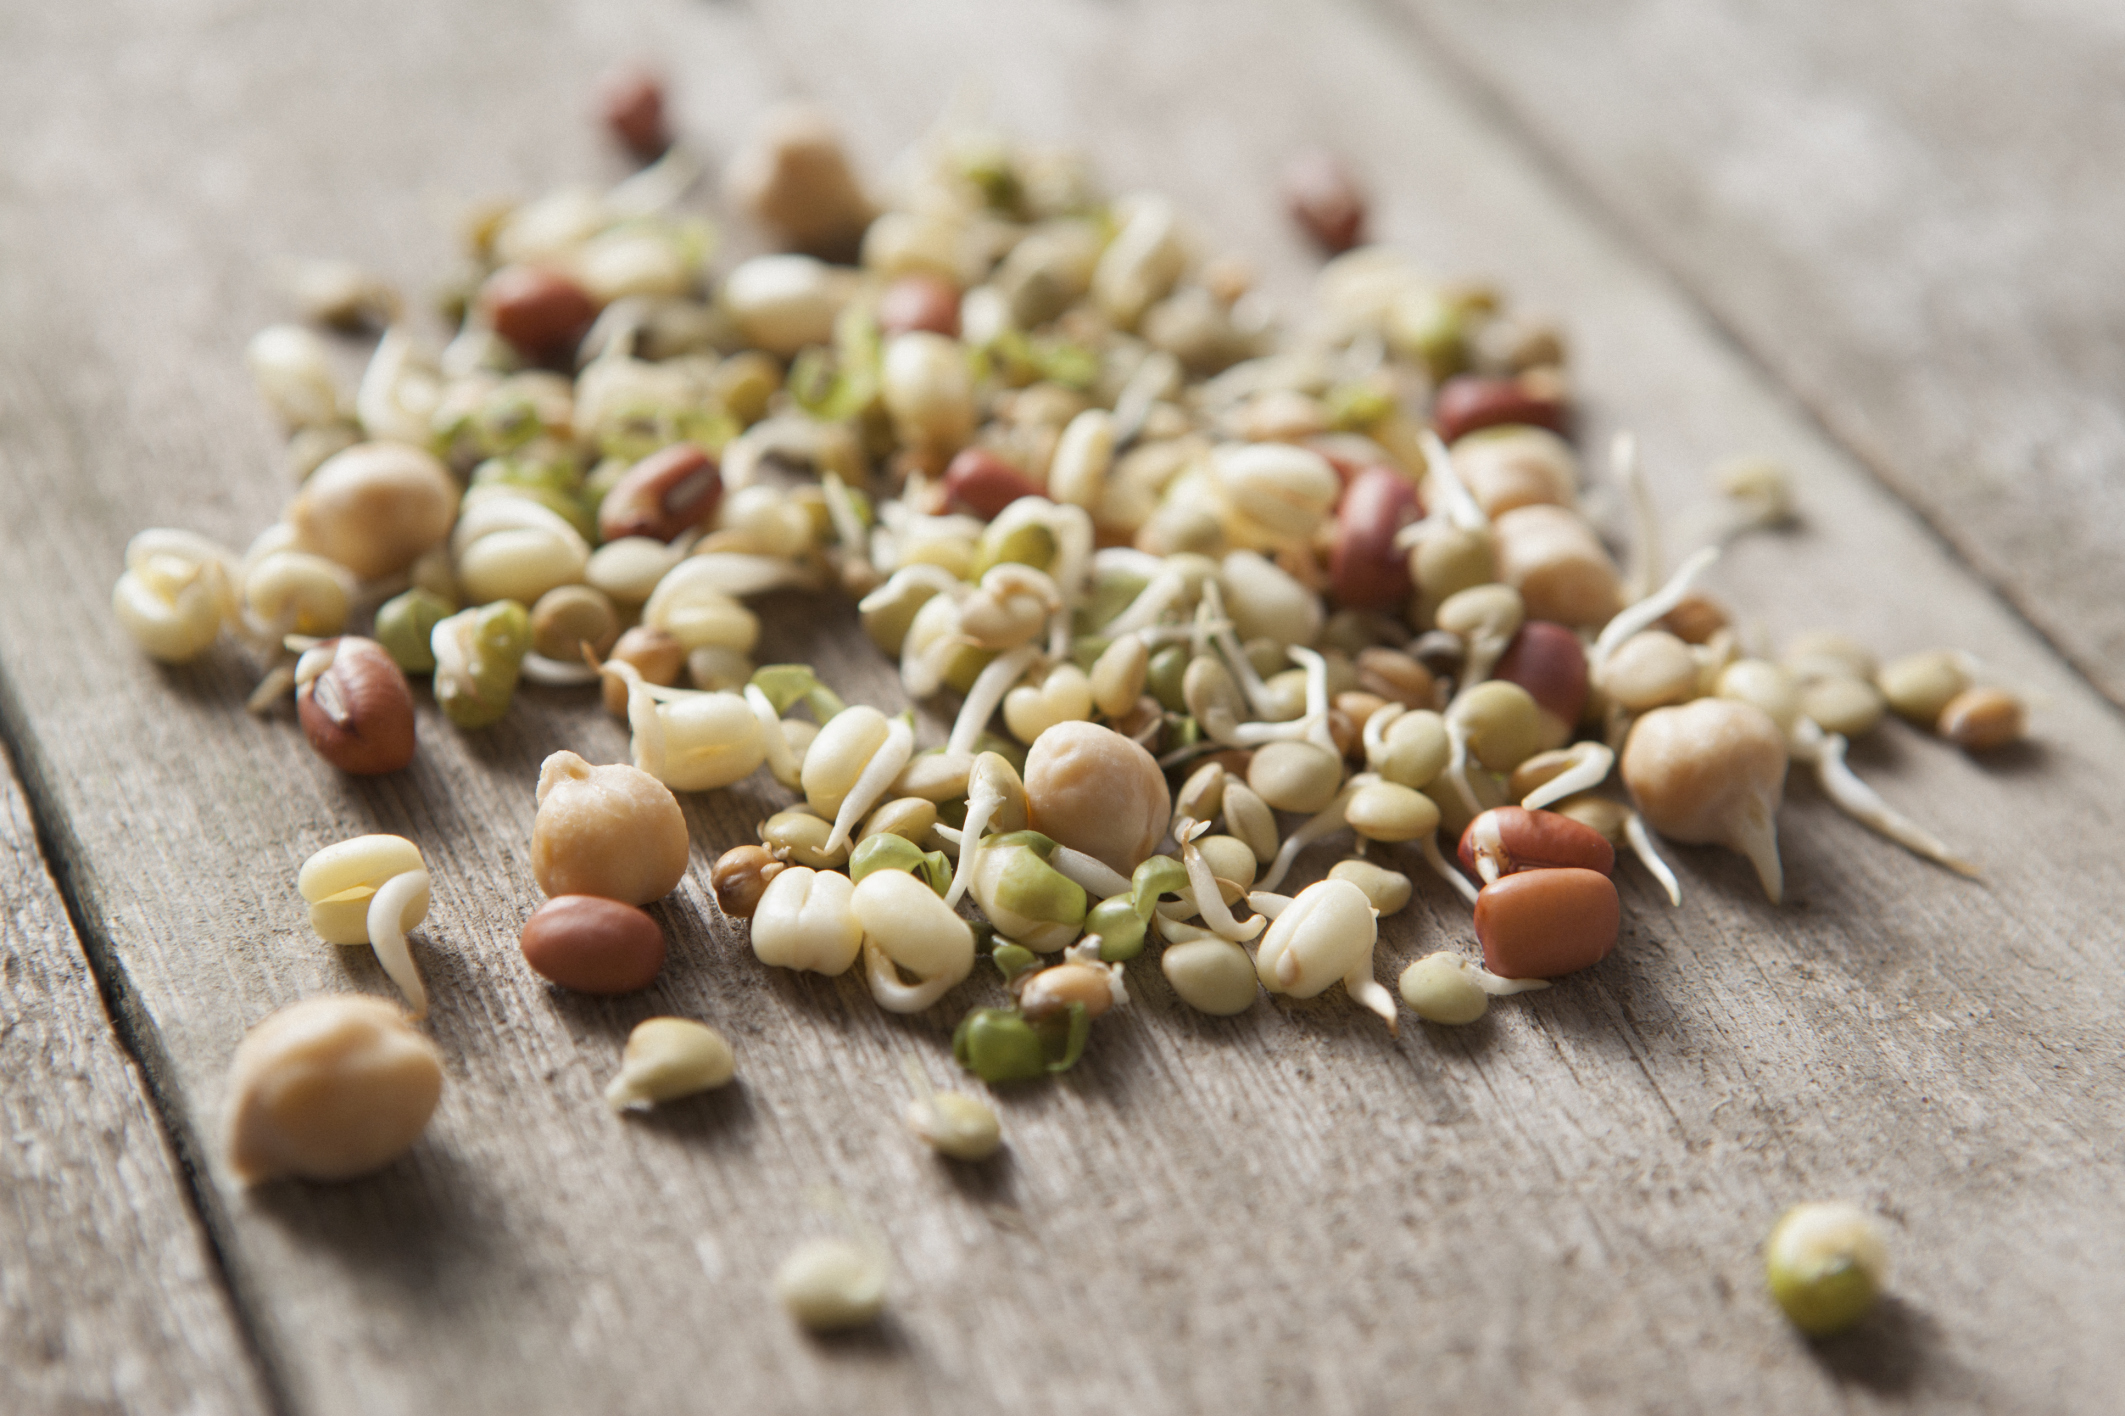 Des graines germées, mais quelle idée? – Happy Healthy Simply